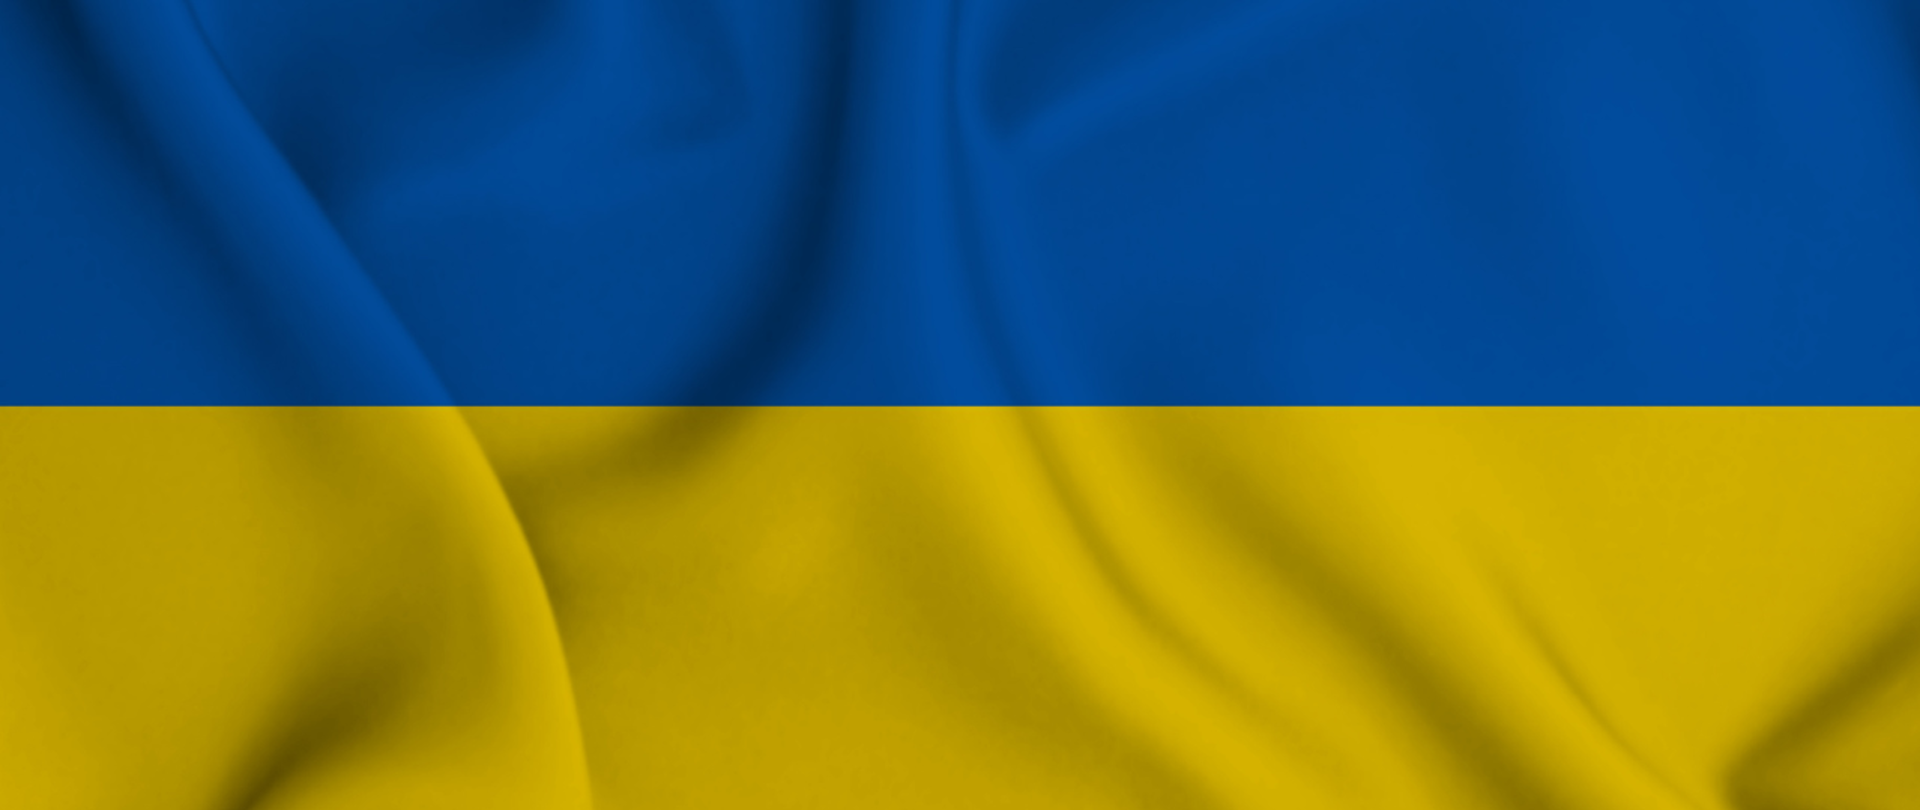 Flaga Ukrainy w kolorach niebiesko-żółty